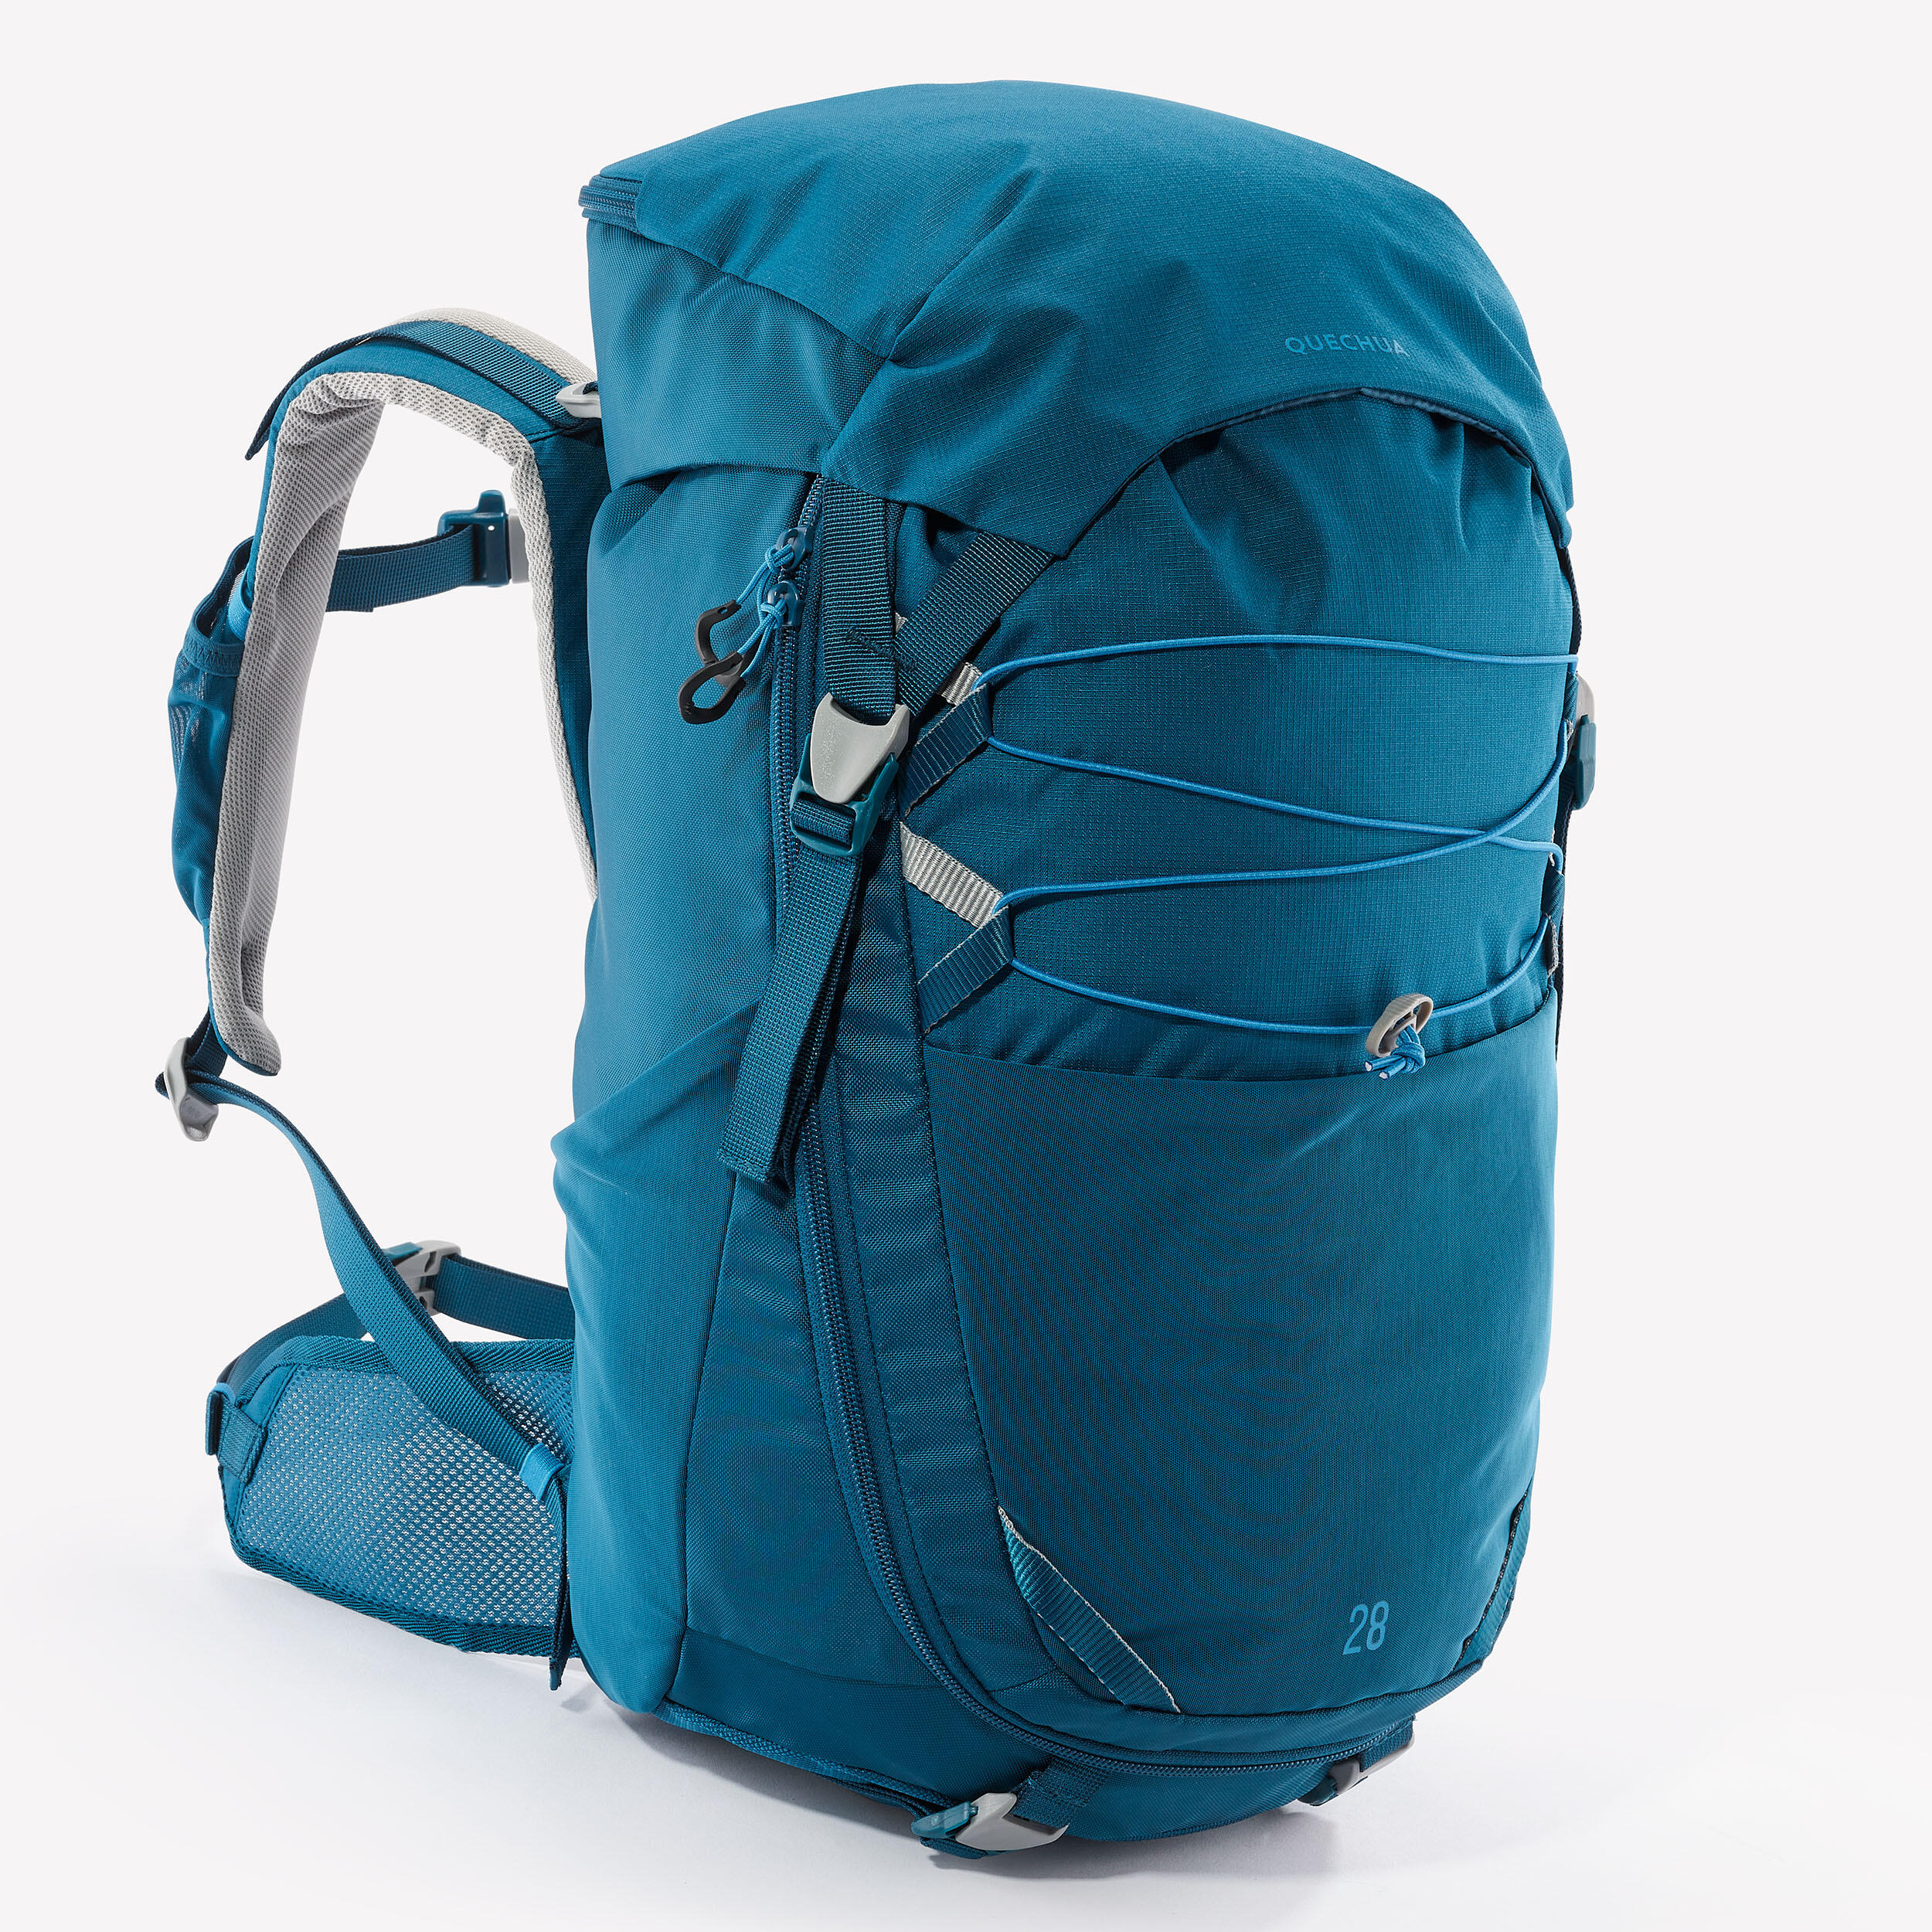 Kids’ 28 L Hiking Backpack - MH 500